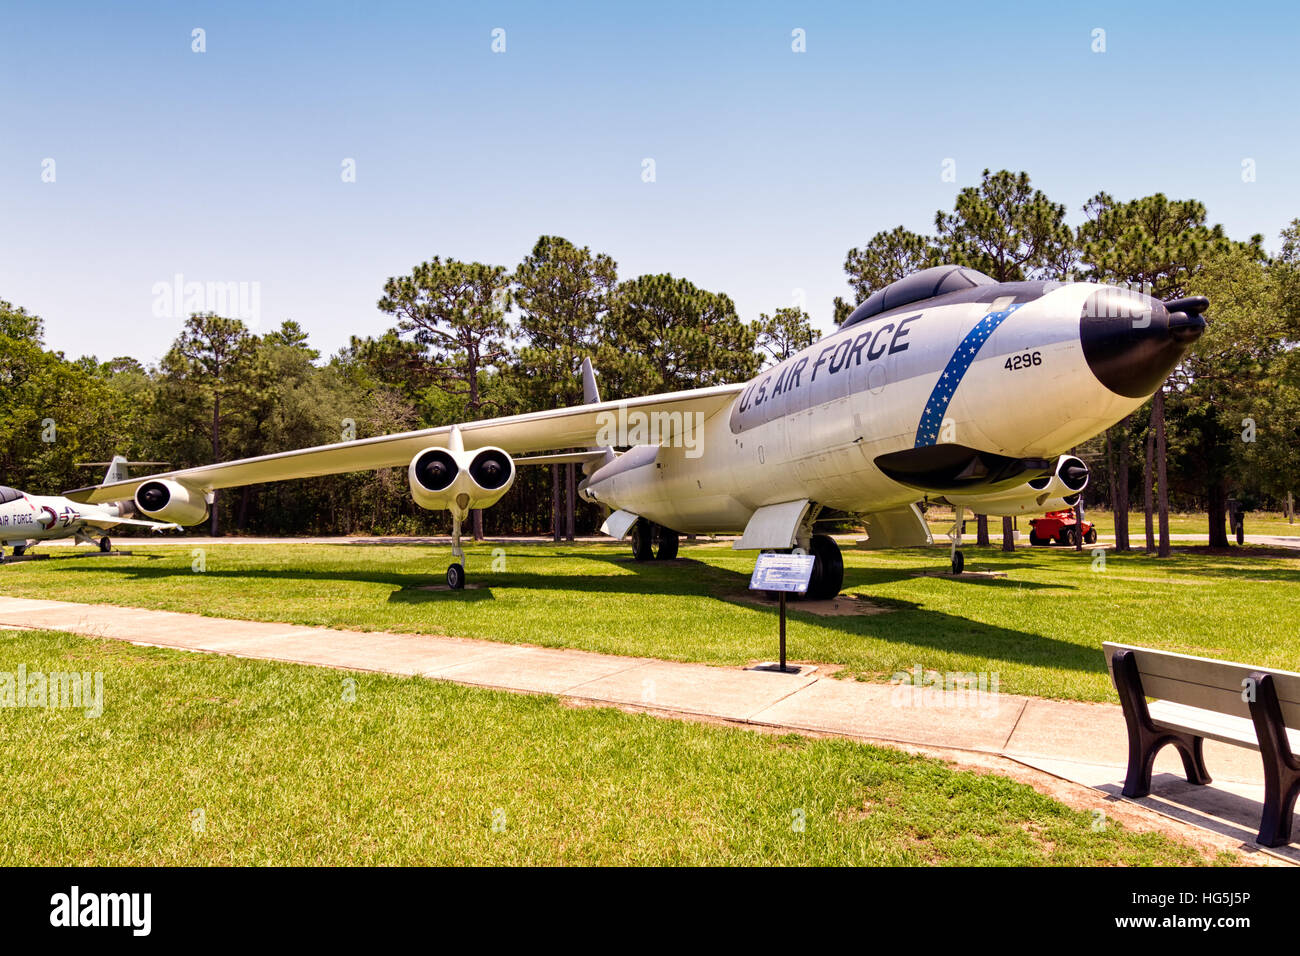 Boeing RB-47H-1-MC Stratojet, 53-4296, a pris sa retraite au stockage 29 décembre 1967, l'USAF dernier B-47 en service actif, une reconnaissance avec la 55e Escadre de reconnaissance stratégique ; retour au travail à partir de la base aérienne Davis-Monthan AFB, MASDC, Arizona,16 juillet 1968, renfloué à North American Aviation, Inglewood, Californie pour essais de F-111 système radar par l'Armée de l'air laboratoire d'avionique. À l'issue de ce programme, piloté à Eglin AFB vers 1976. Il a fait appel à la fois le F-111 radôme et stubby RB-47H nez remplacé par le nez des bombardiers standard, ce qui en fait une configuration abâtardie. Affiché dans stratégique typique Banque D'Images